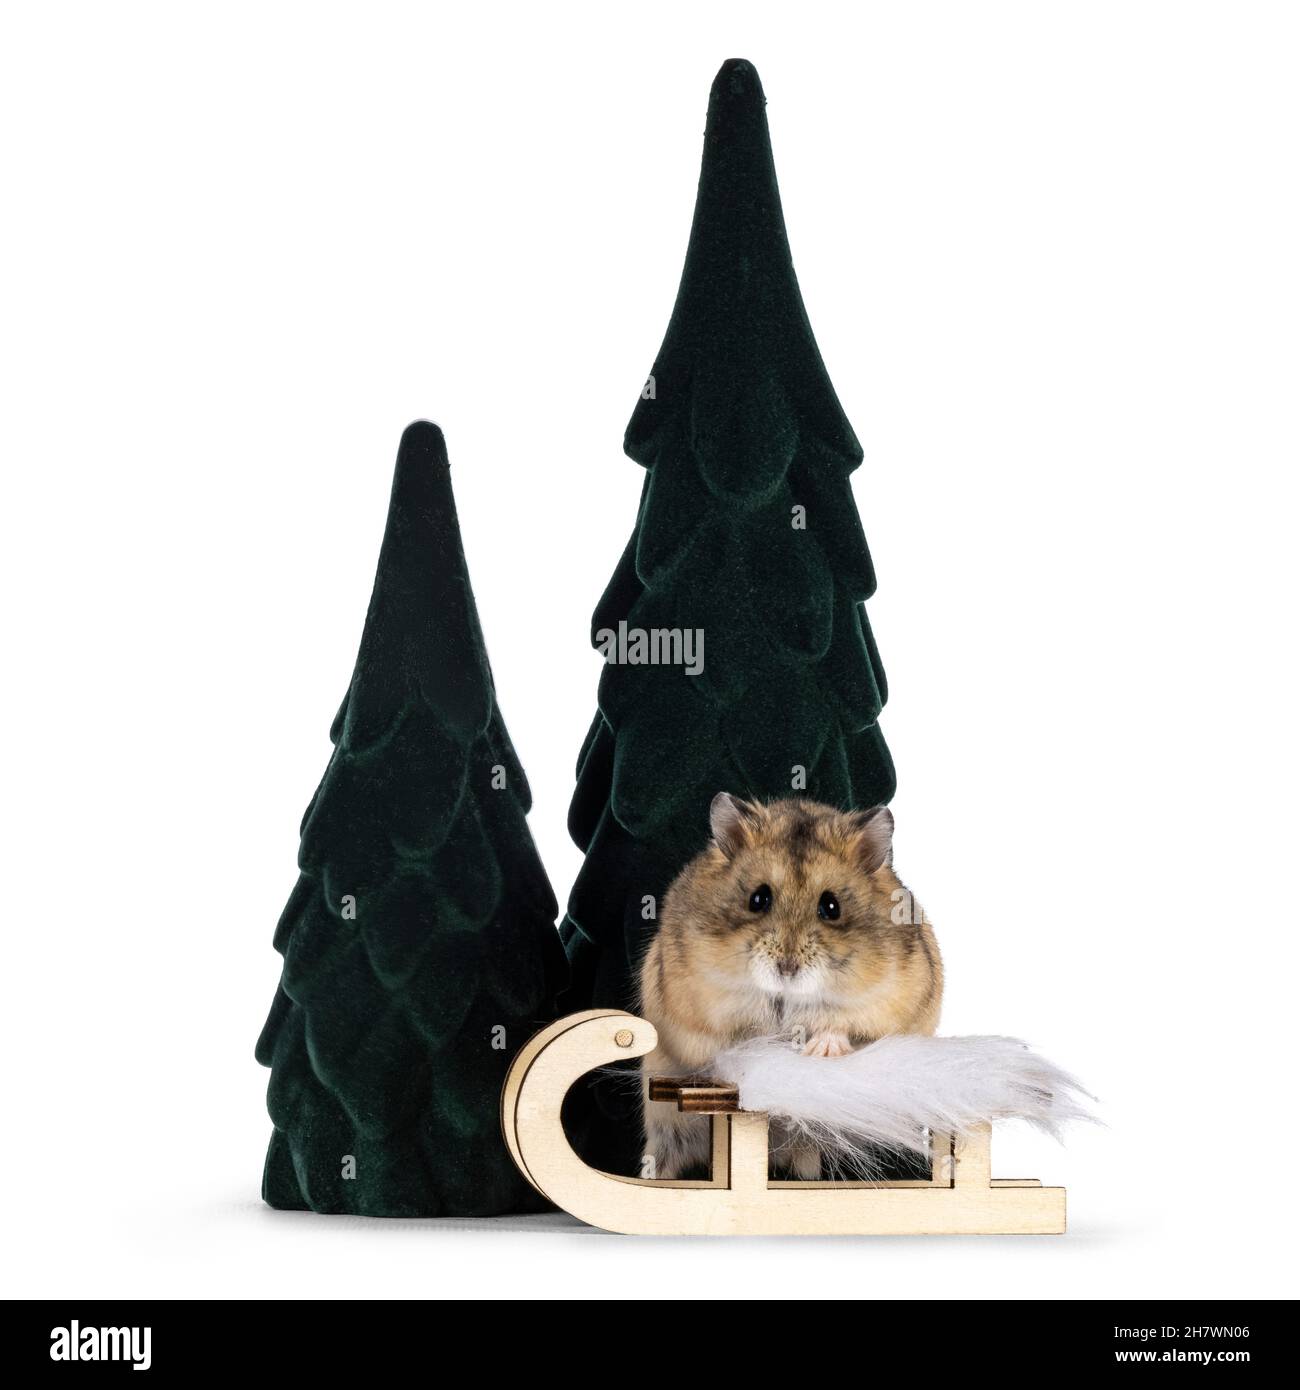 Brauner, erwachsener Hamster, der zwischen gefälschter Baumdekoration hinter einem winzigen Holzschlitten steht. Typische Winterszene. Hamster schaut mit Beady auf die Kamera Stockfoto